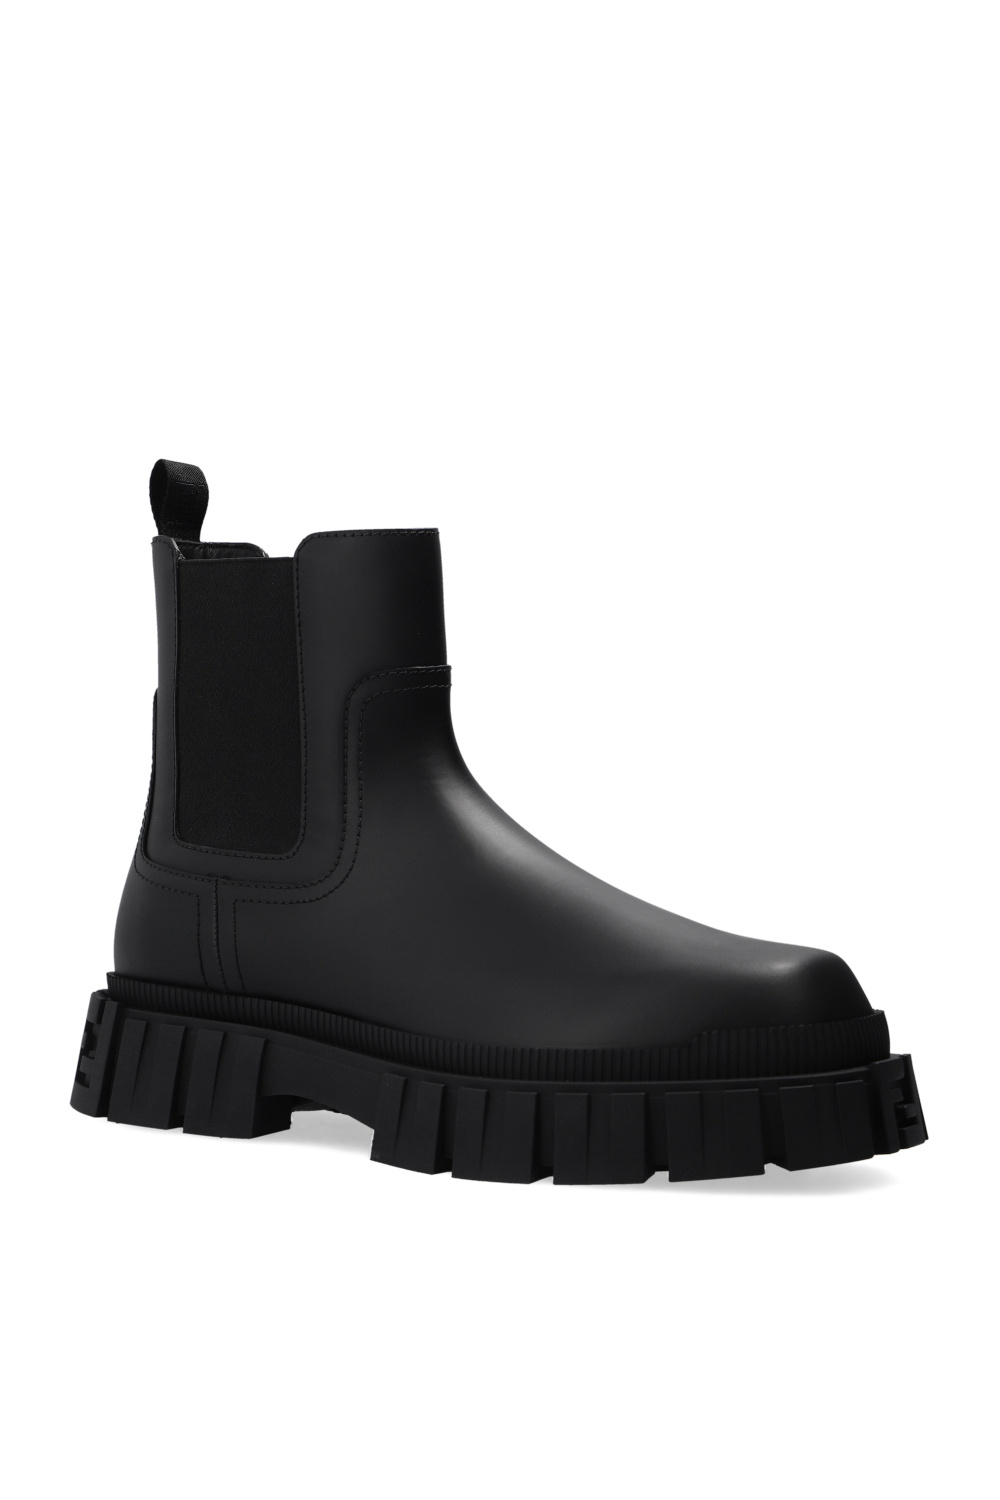 Fendi ‘Force’ Chelsea boots | Men's Shoes | Vitkac